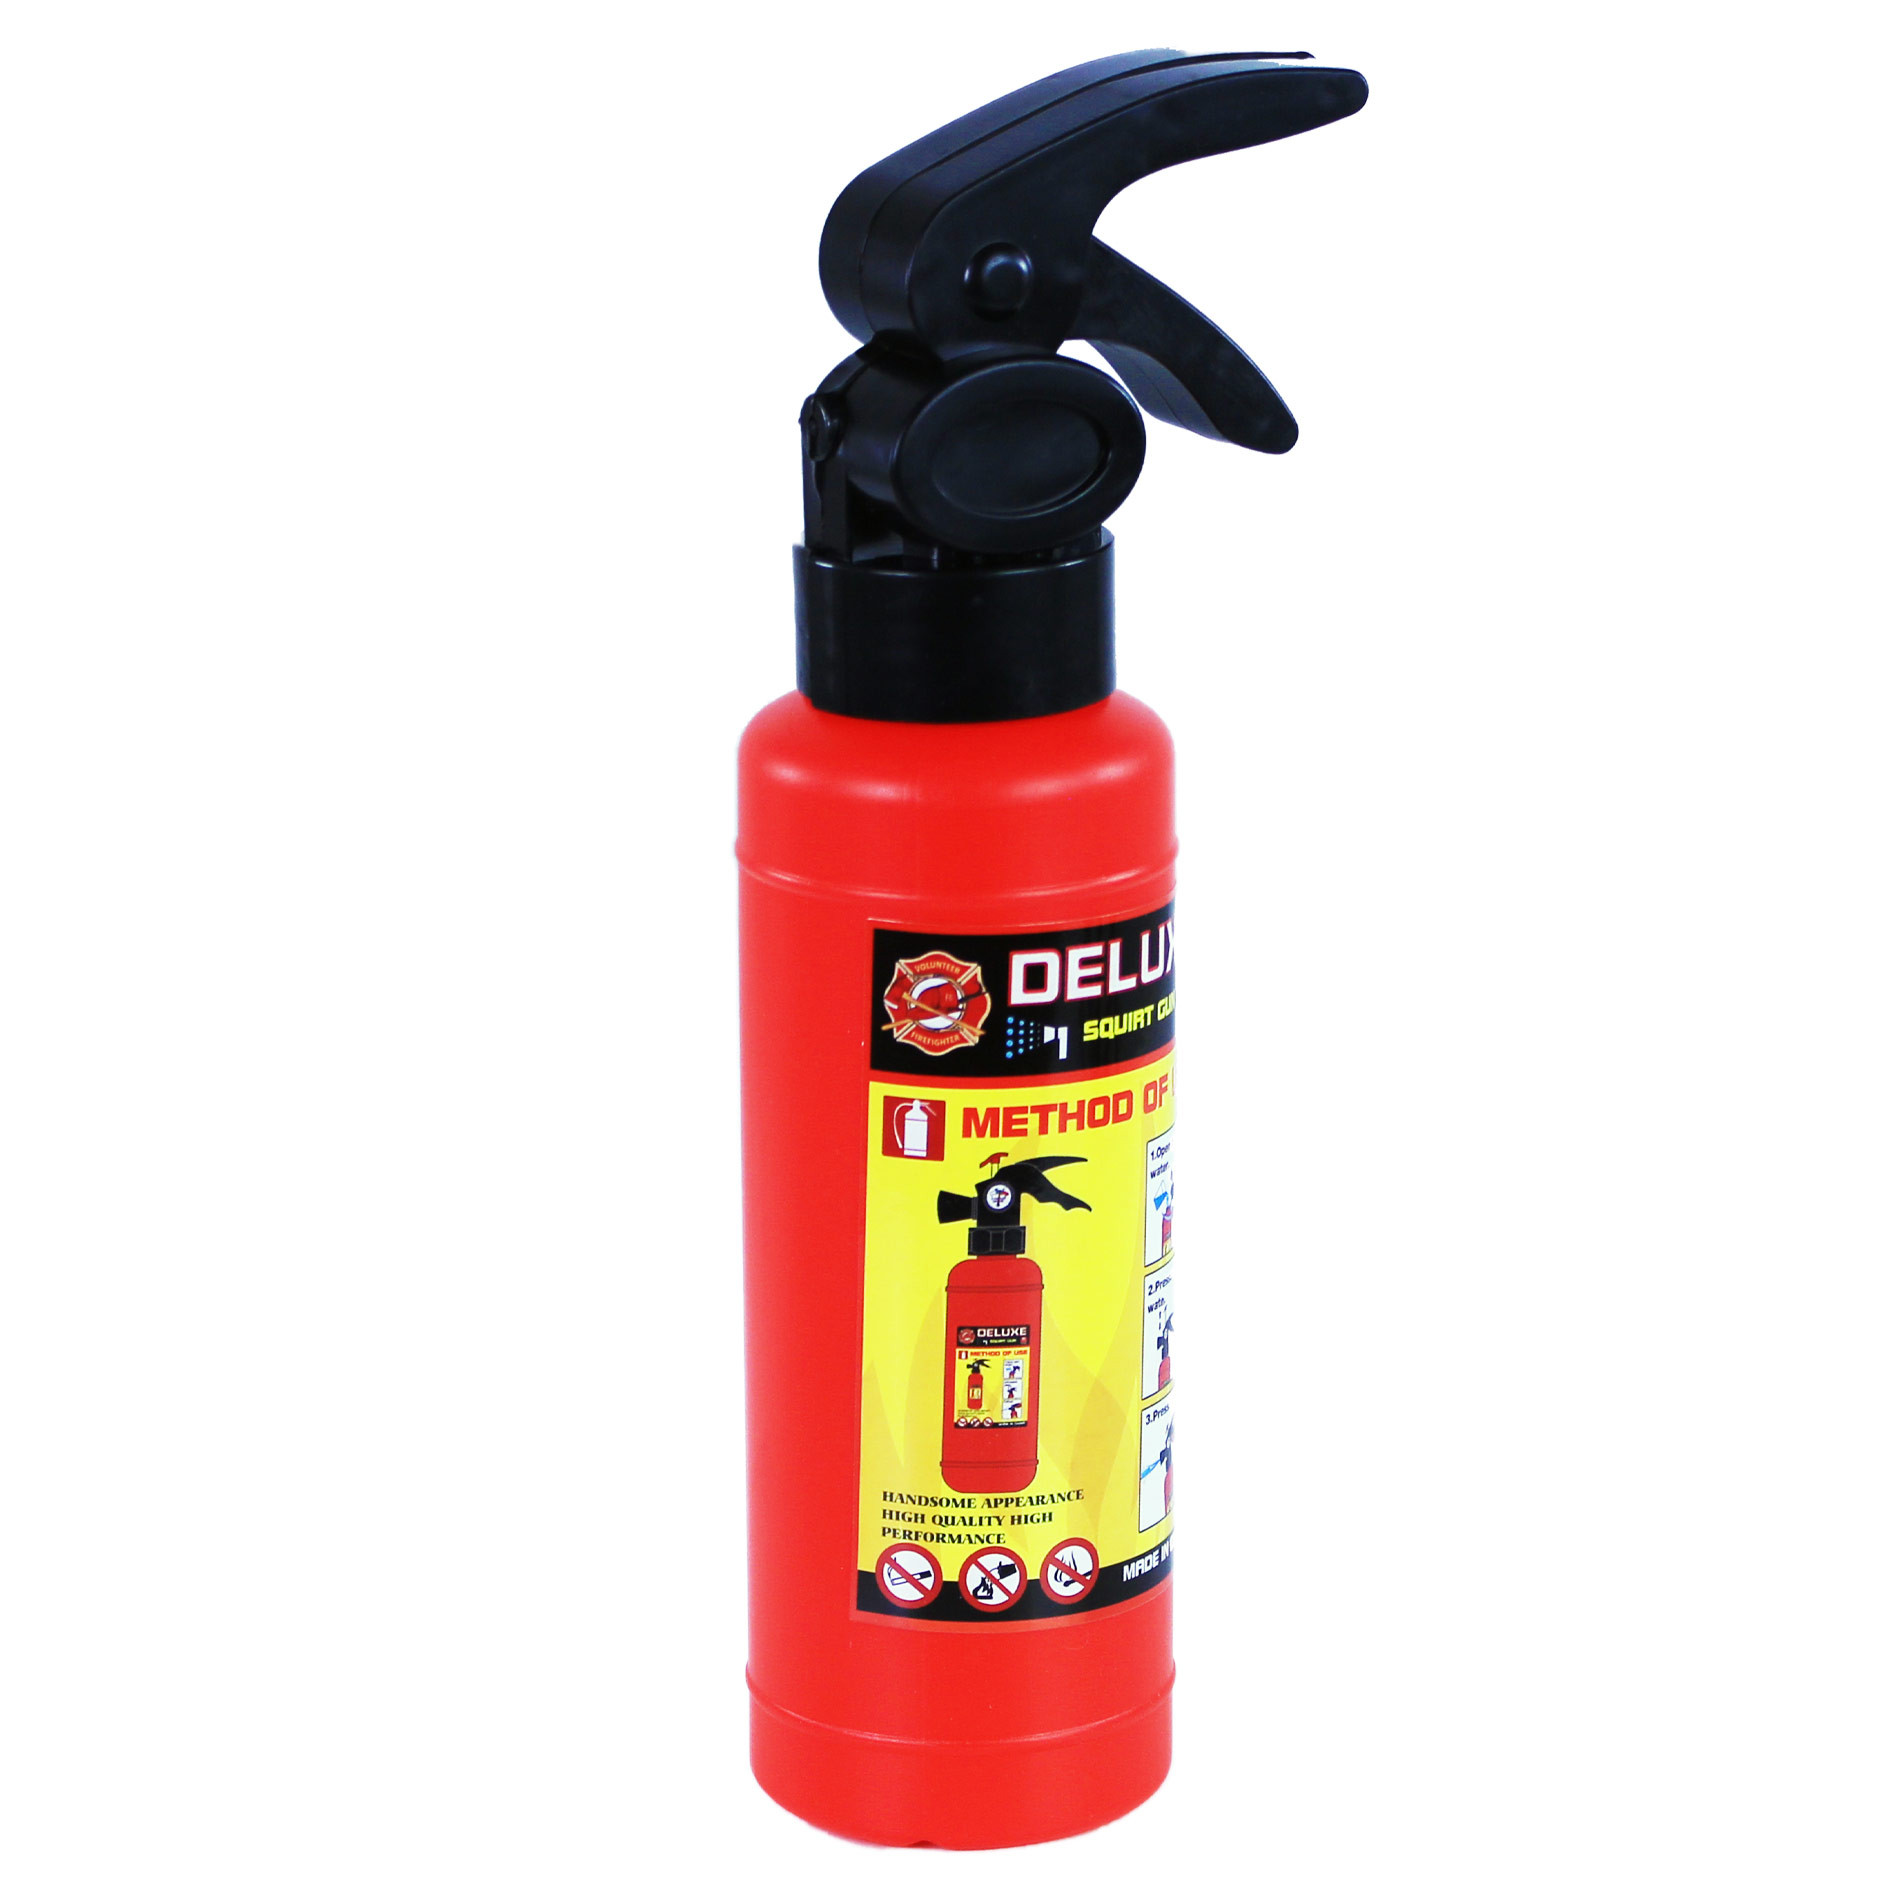 Water gun fire extinguisher